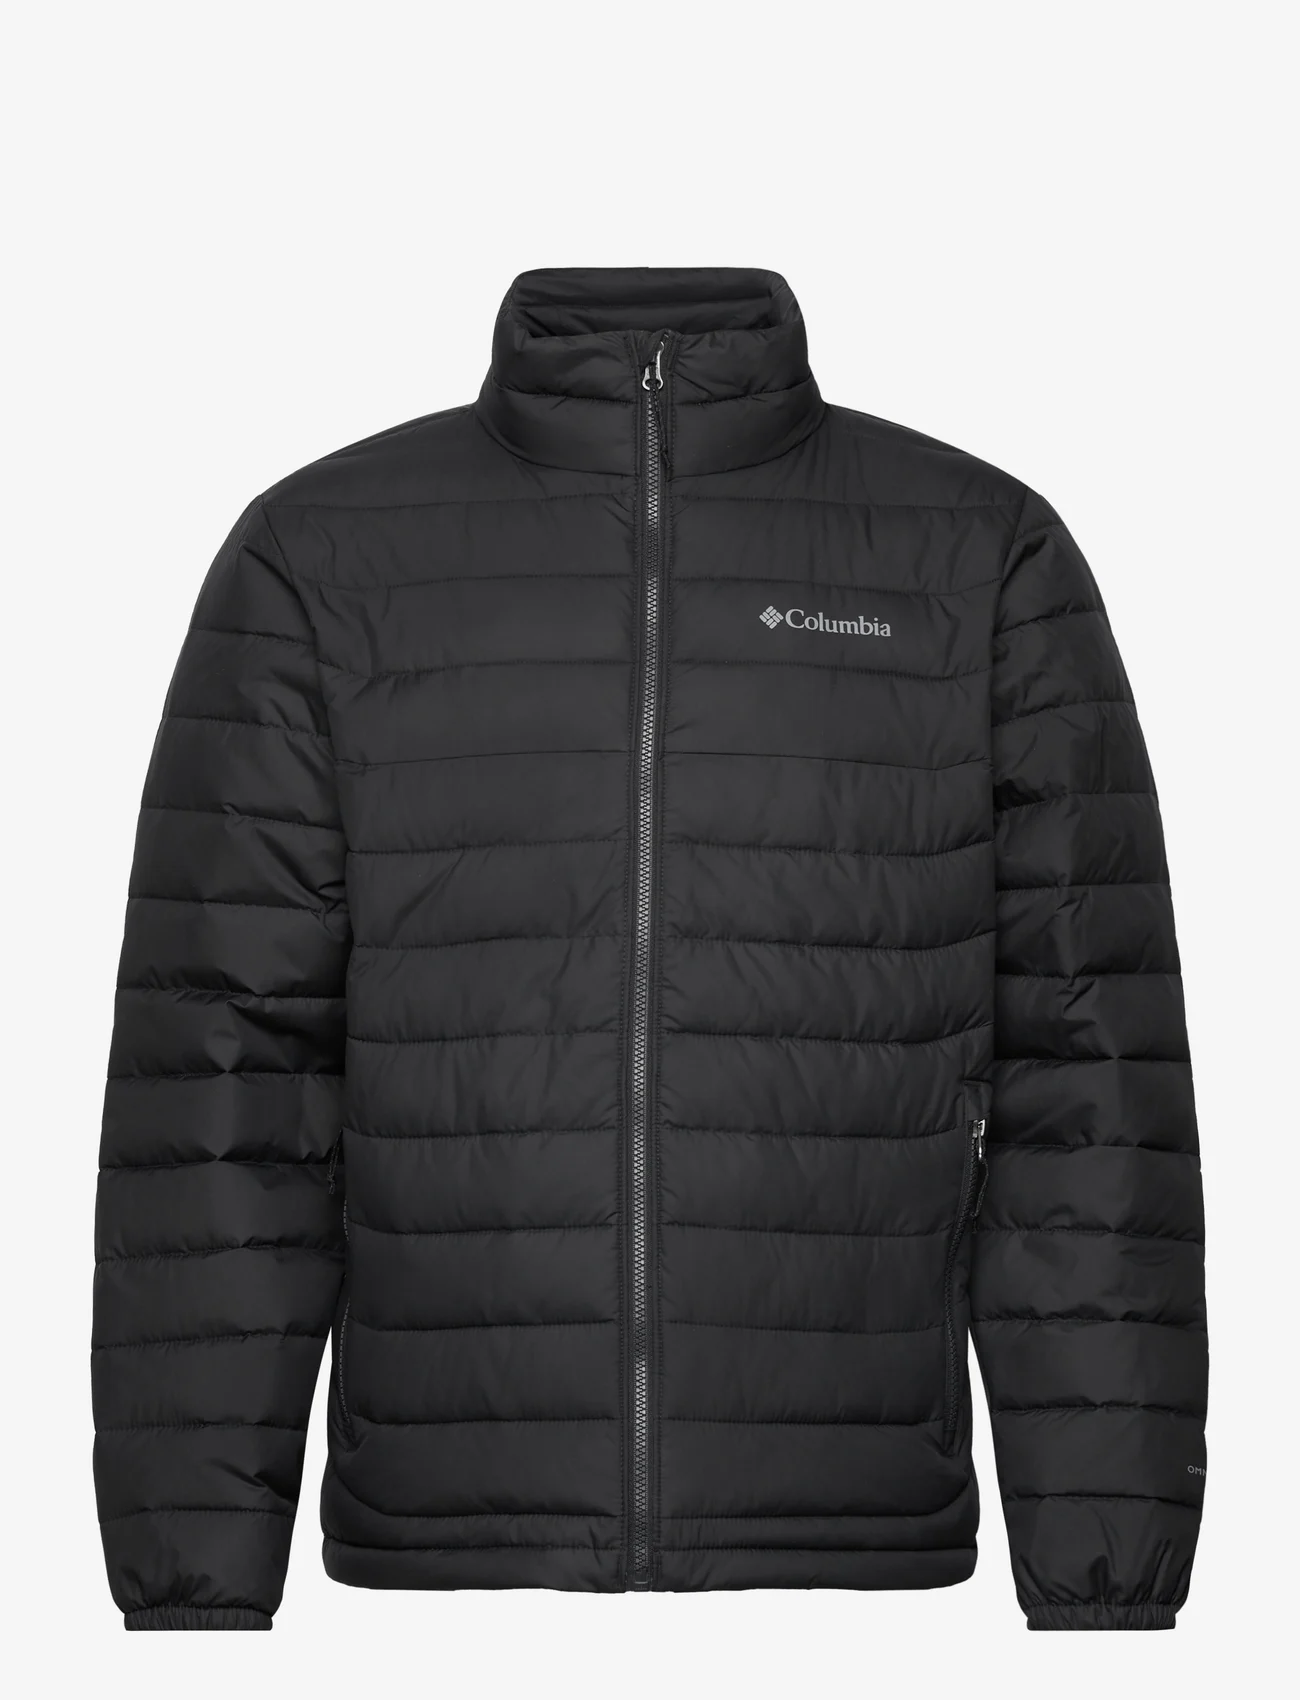 Columbia Sportswear - Powder Lite Jacket - winterjassen - black - 0